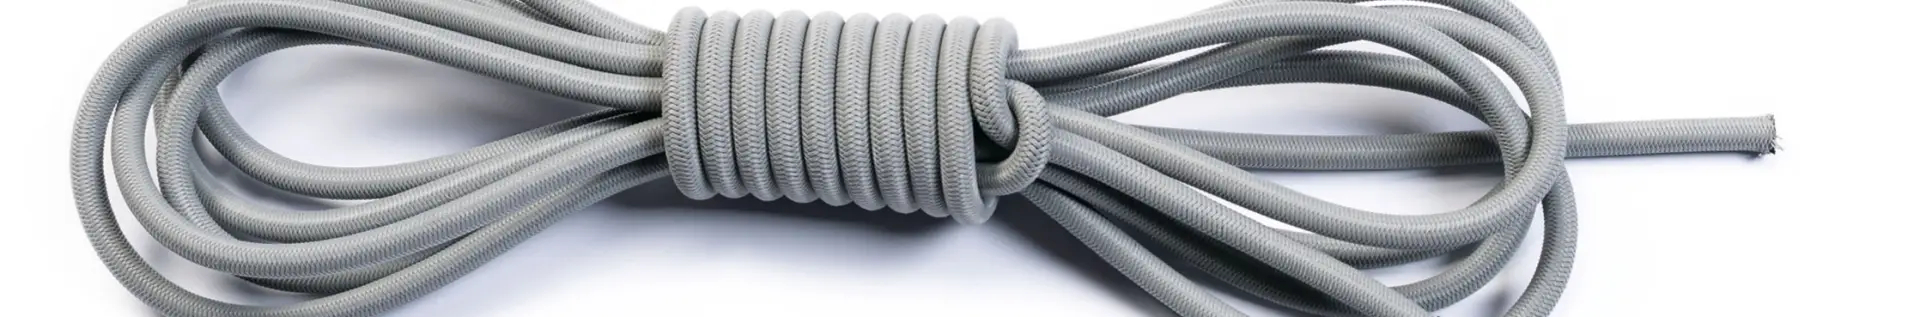 Corde elastiche vari colori e diametri | Ribola